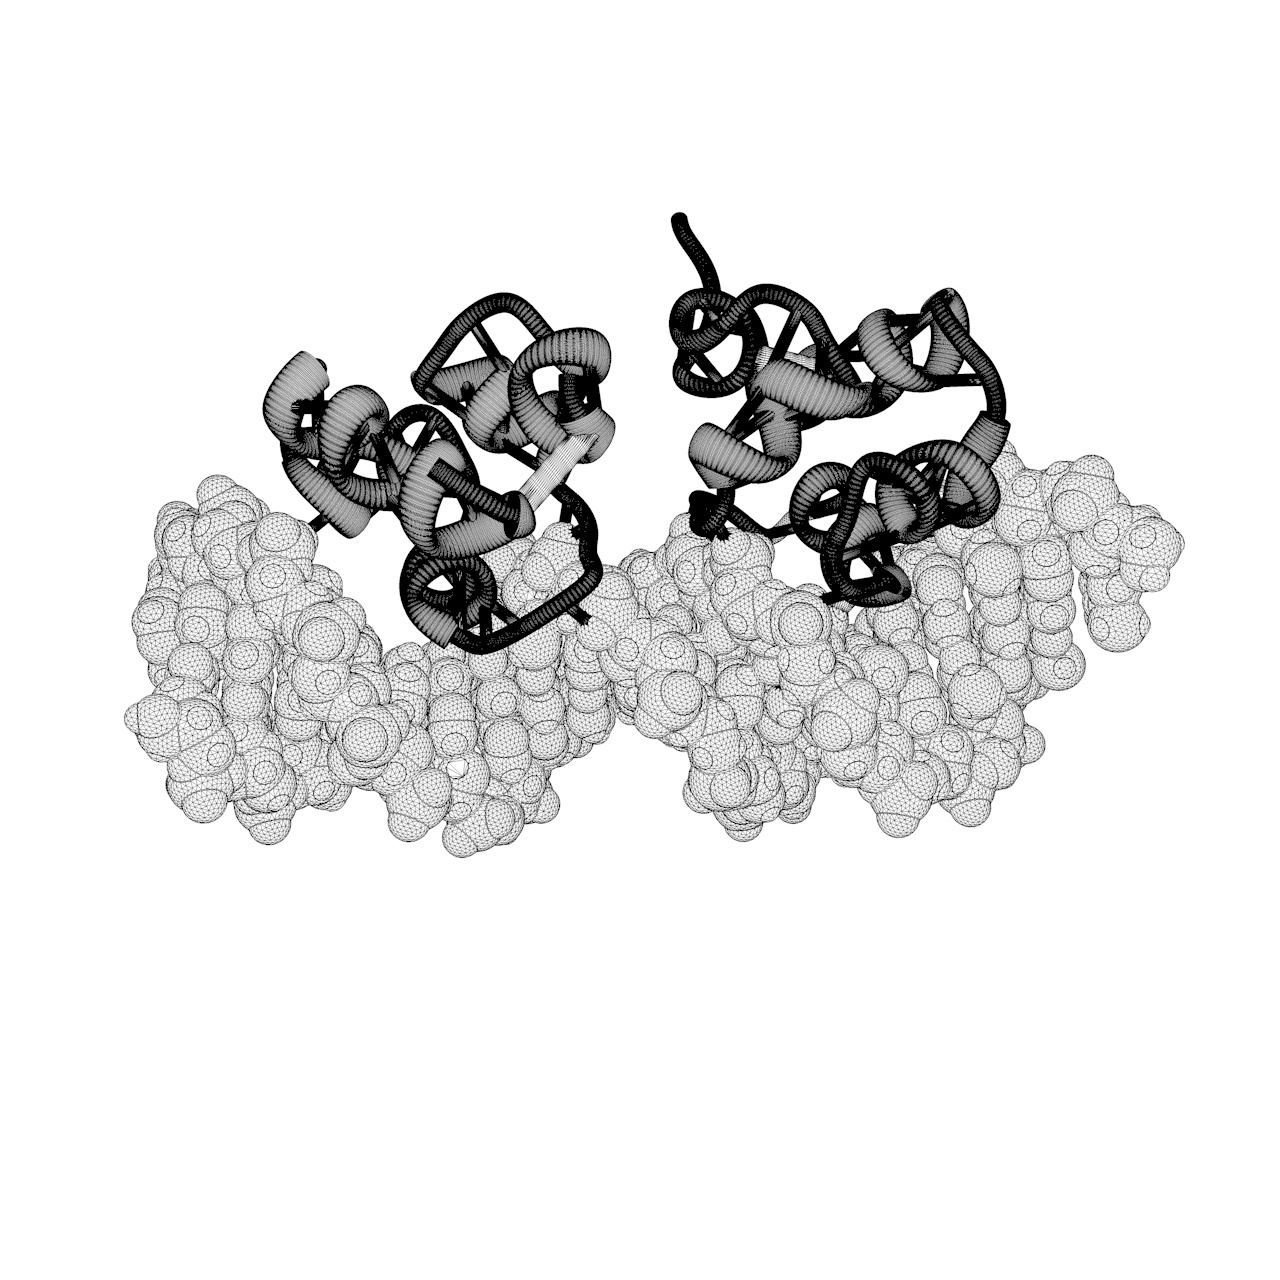 Modelo de impresión en 3d de proteína de unión 434-CRO-DNA